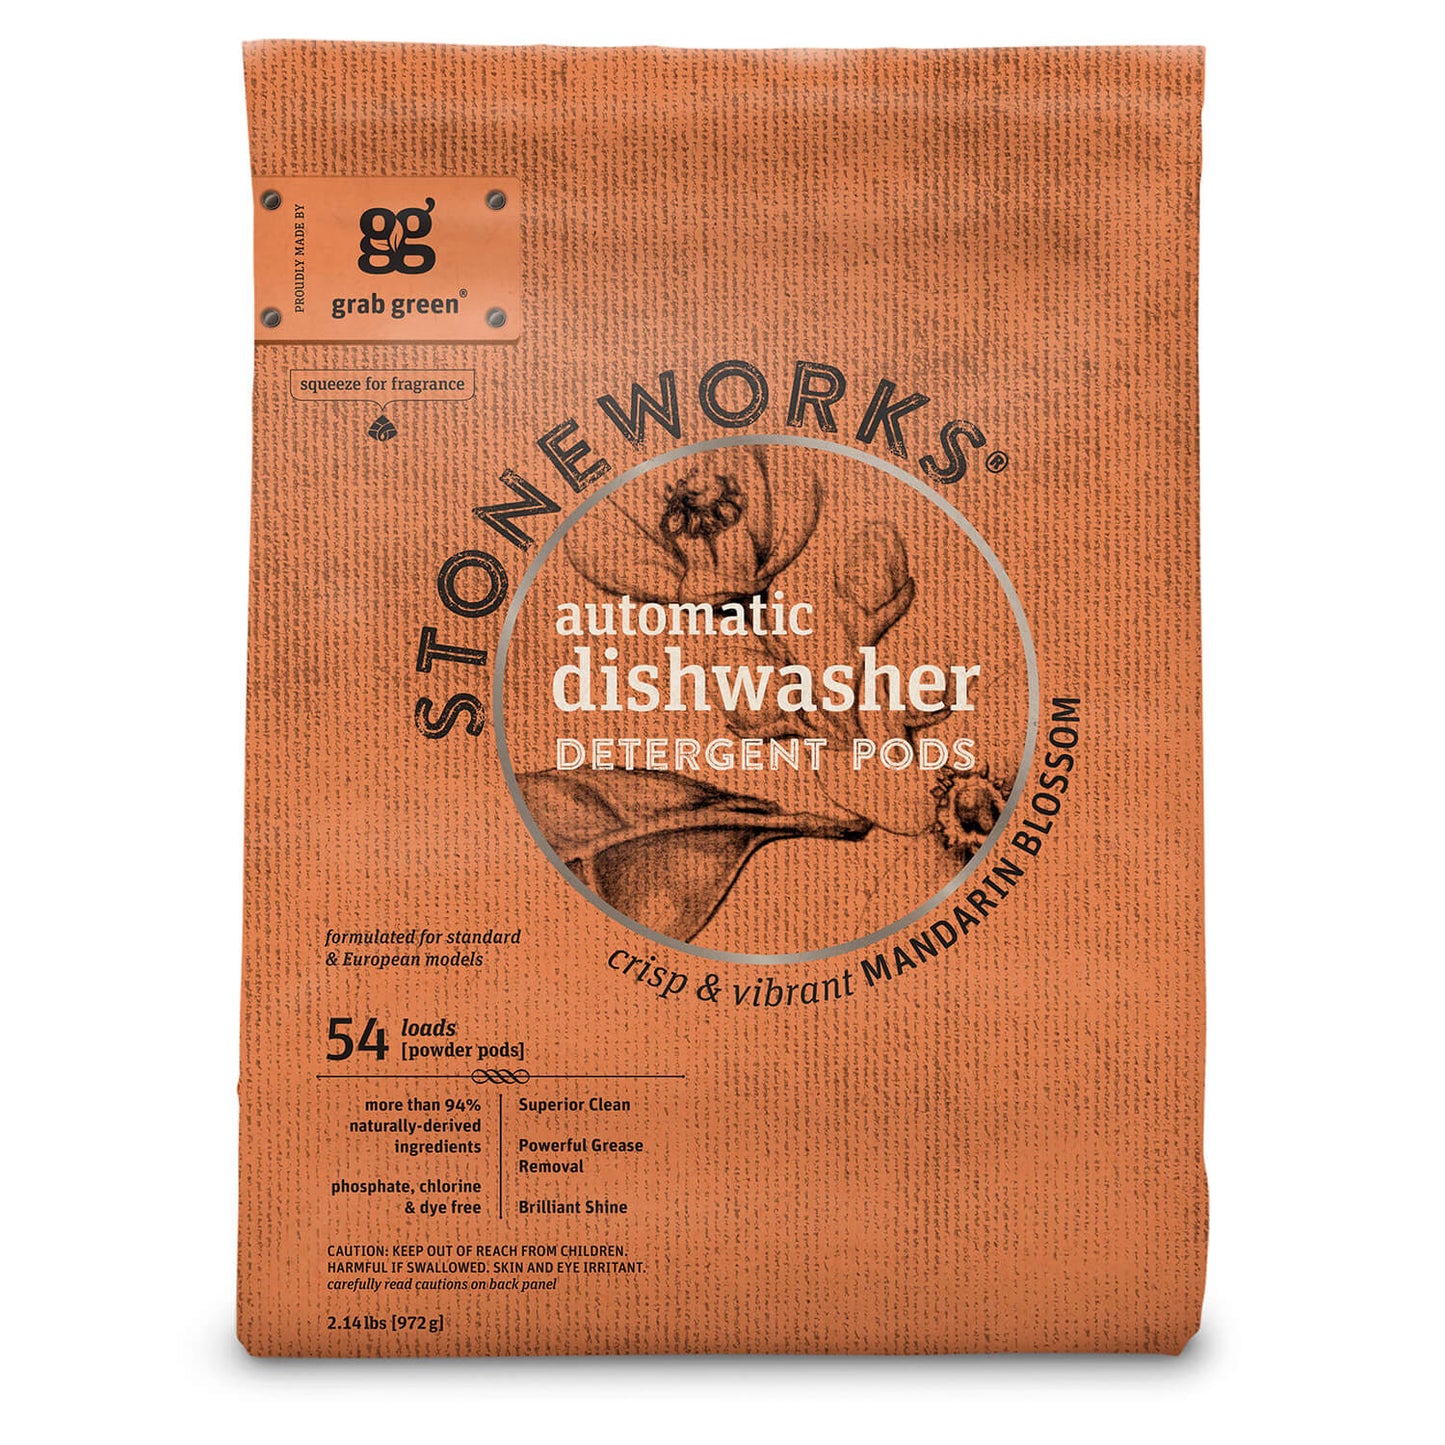 Stoneworks Dishwashing Detergent Pods - 60% OFF